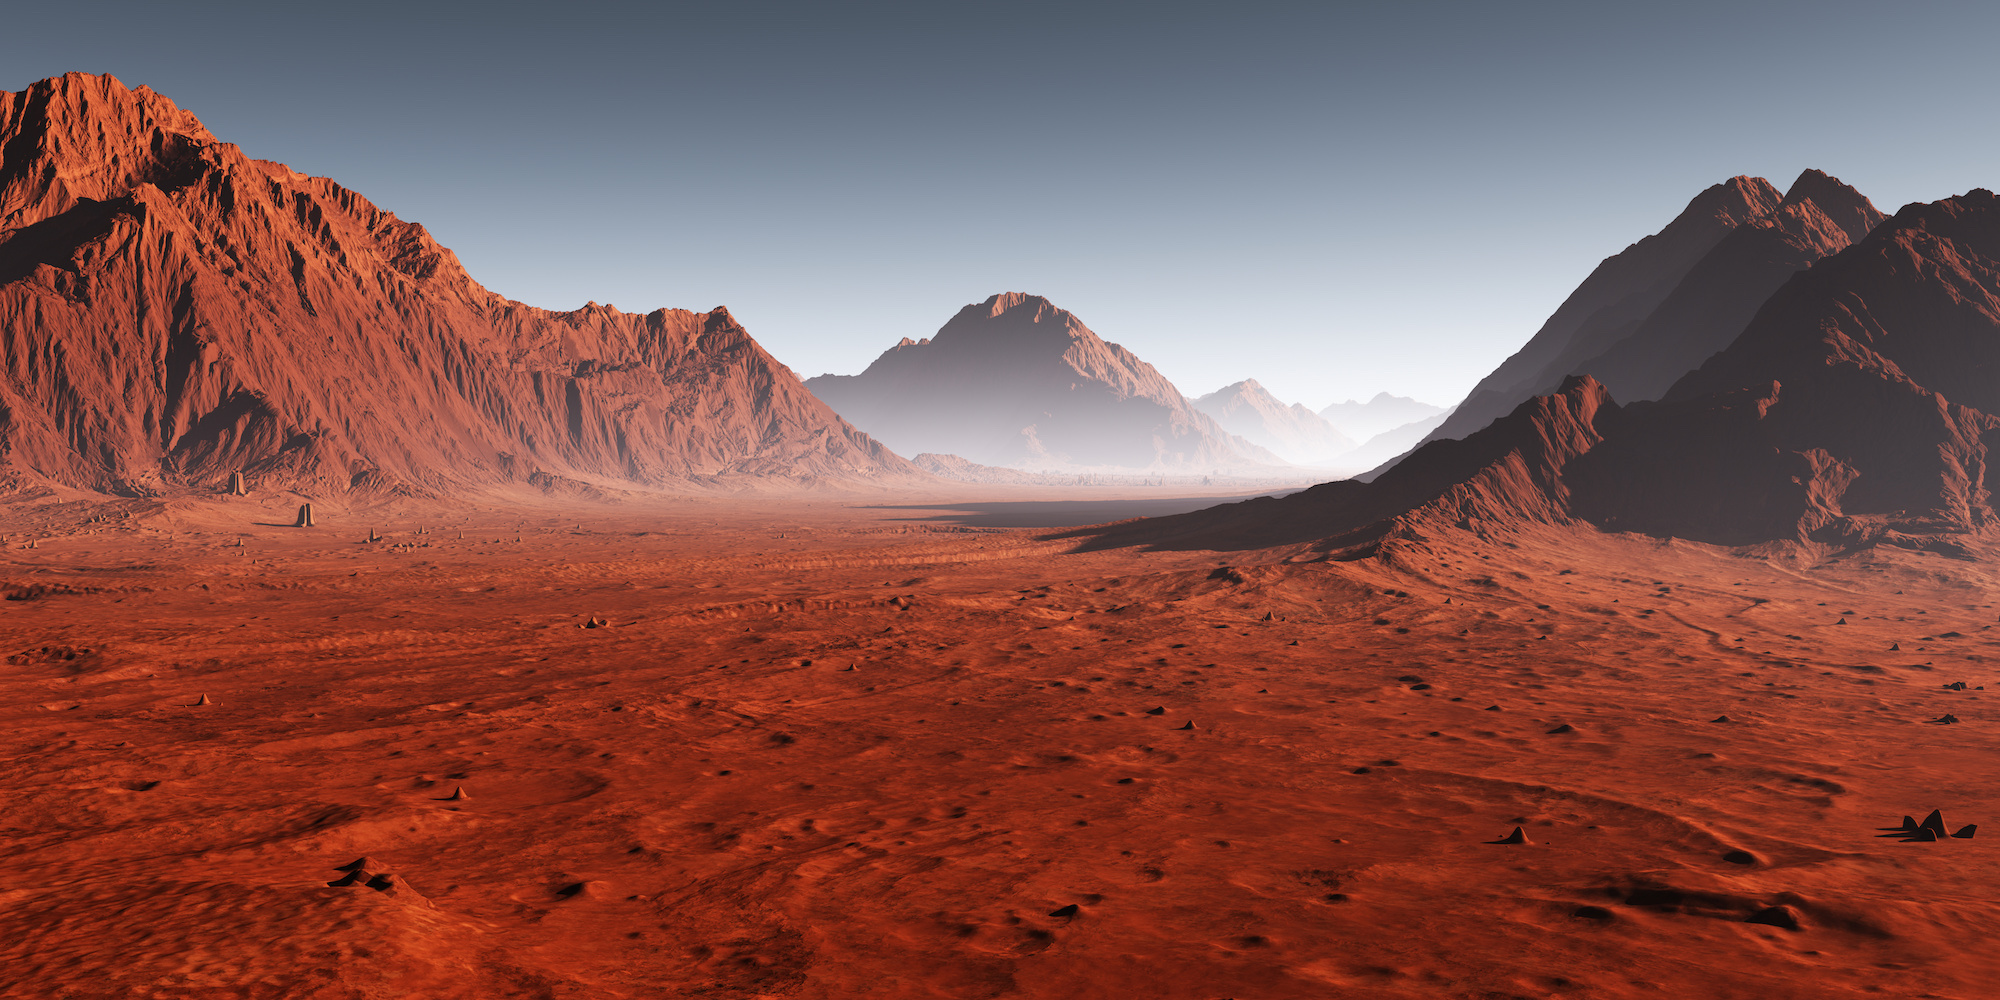 Si aujourd'hui l'atmosphère de Mars est quasiment dénuée d'oxygène, cela n'aurait peut-être pas été le cas dans le passé. © Peter Jurik, Adobe Stock